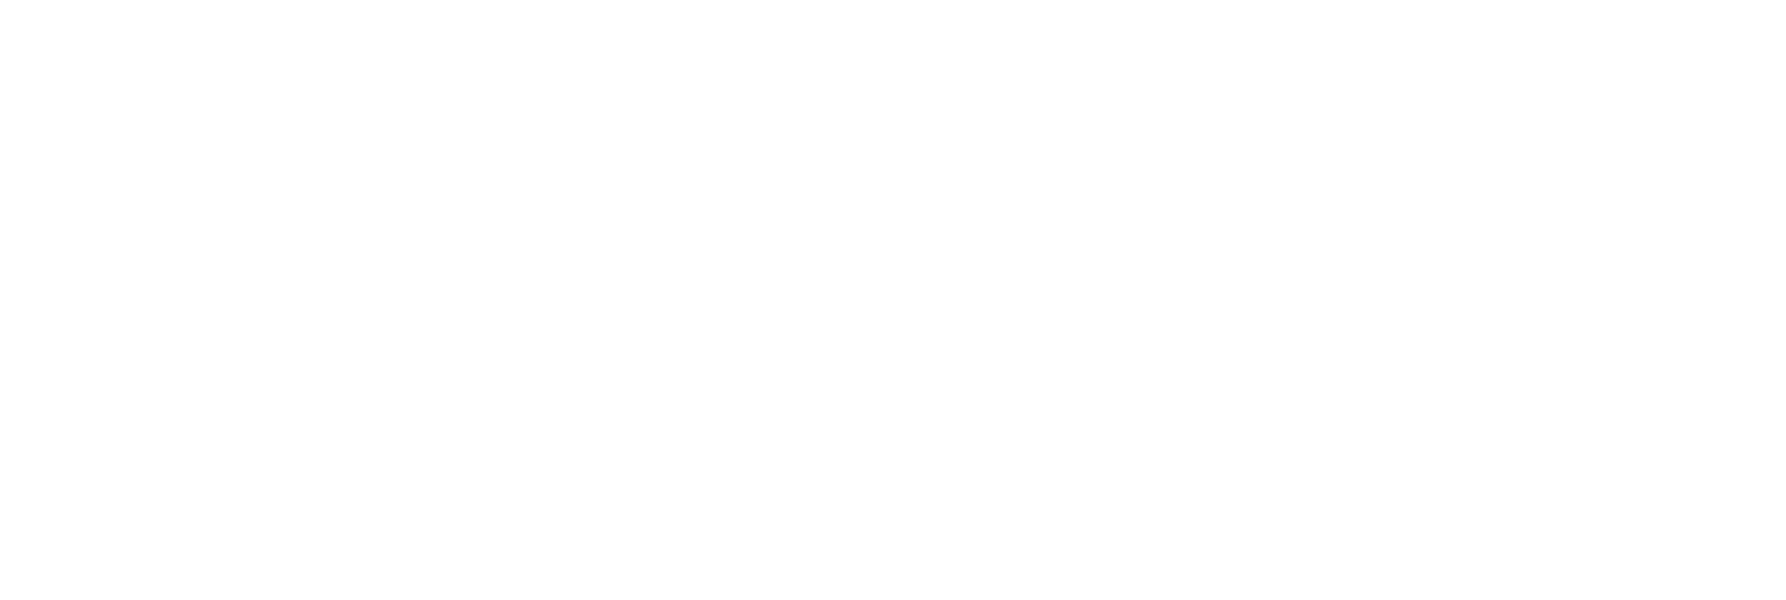 Logo Universidad Finis Terrae